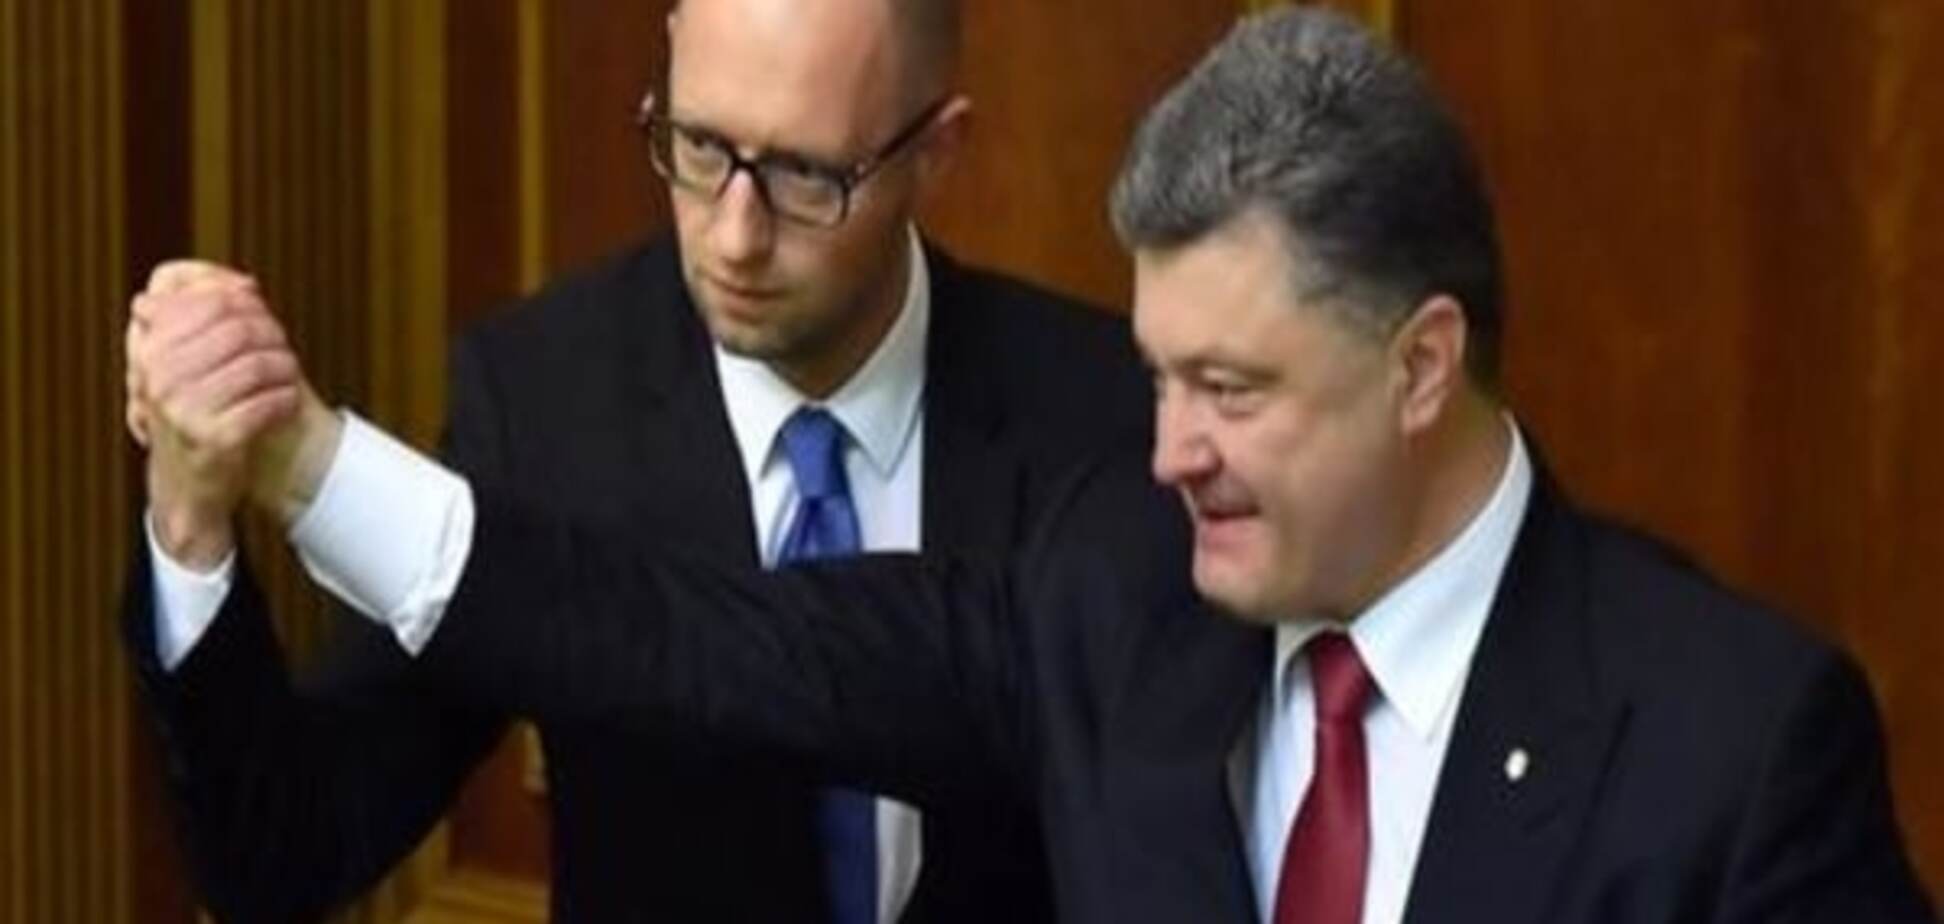 Коментар: Більше відмовок для України не буде